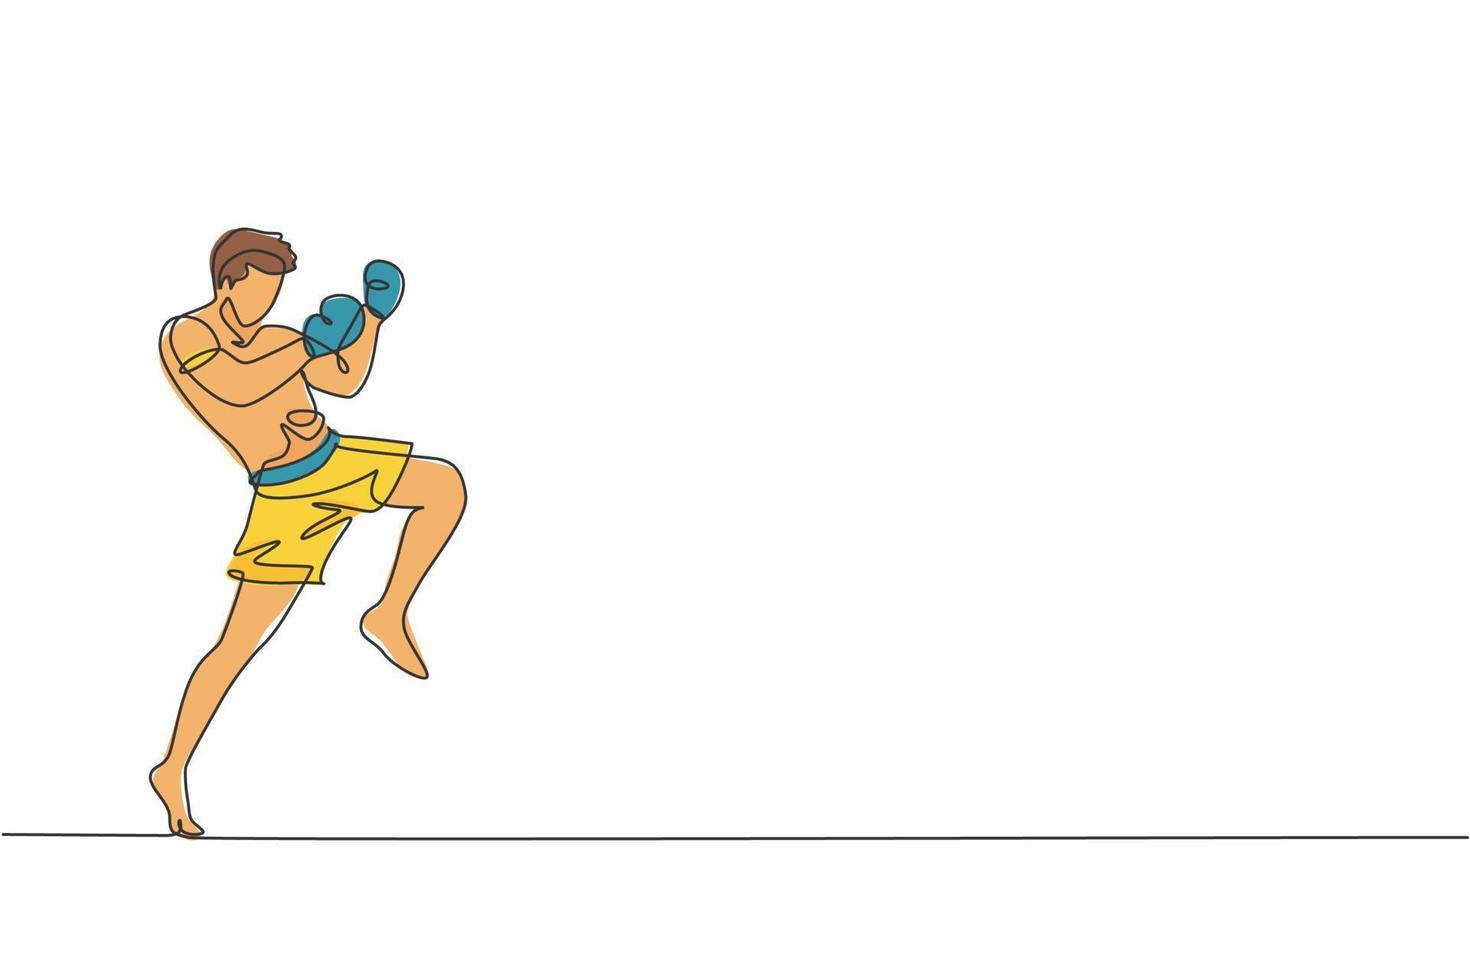 en kontinuerlig linjeteckning av ung sportig muay thai boxerman som förbereder sig för att slåss, ställningspark på boxarenan. fighting sport spelkoncept. dynamisk enda rad rita design vektorgrafisk illustration vektor